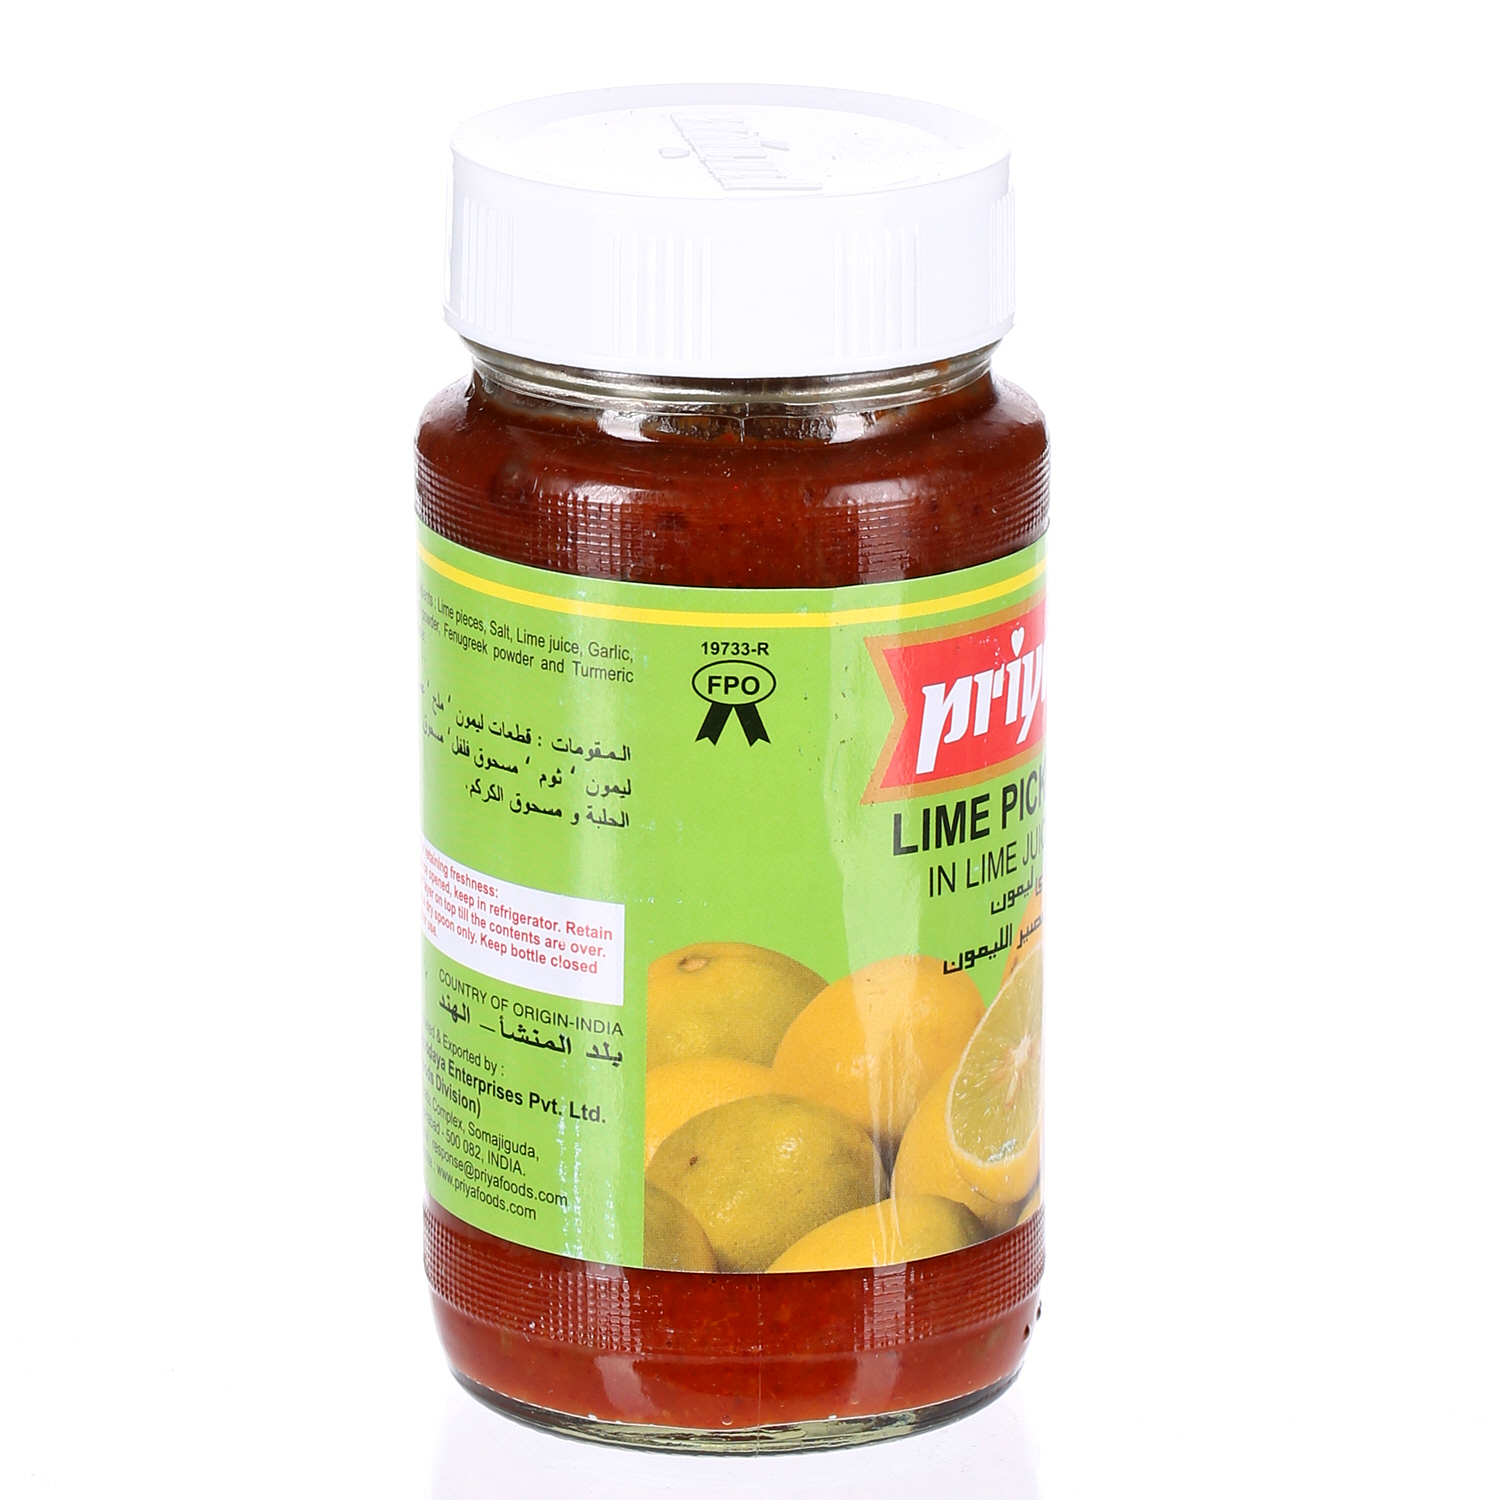 Priya Lime Pickle 300gm